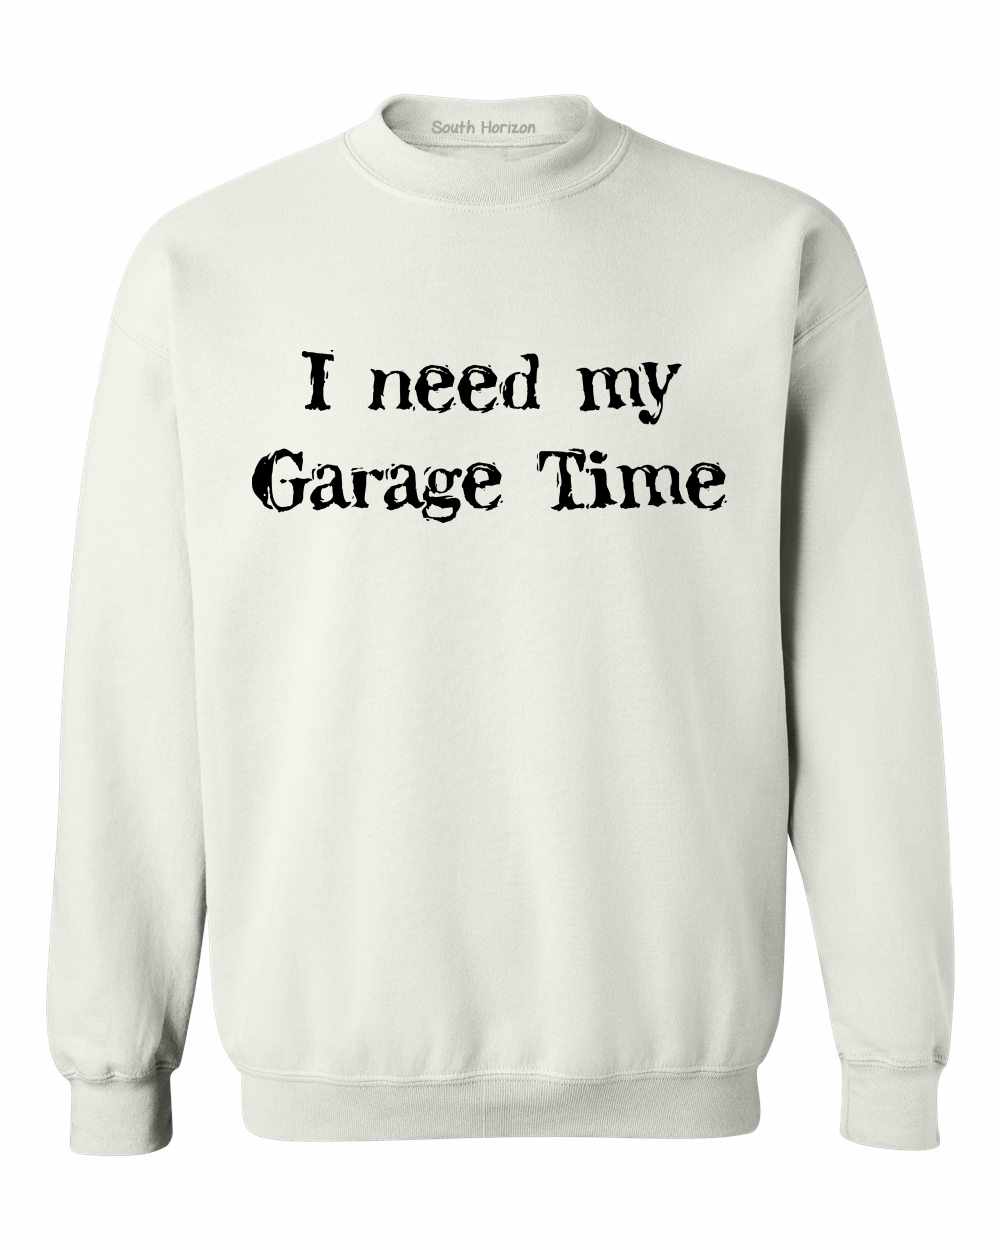 I Need My Garage Time on SweatShirt (#470-11)